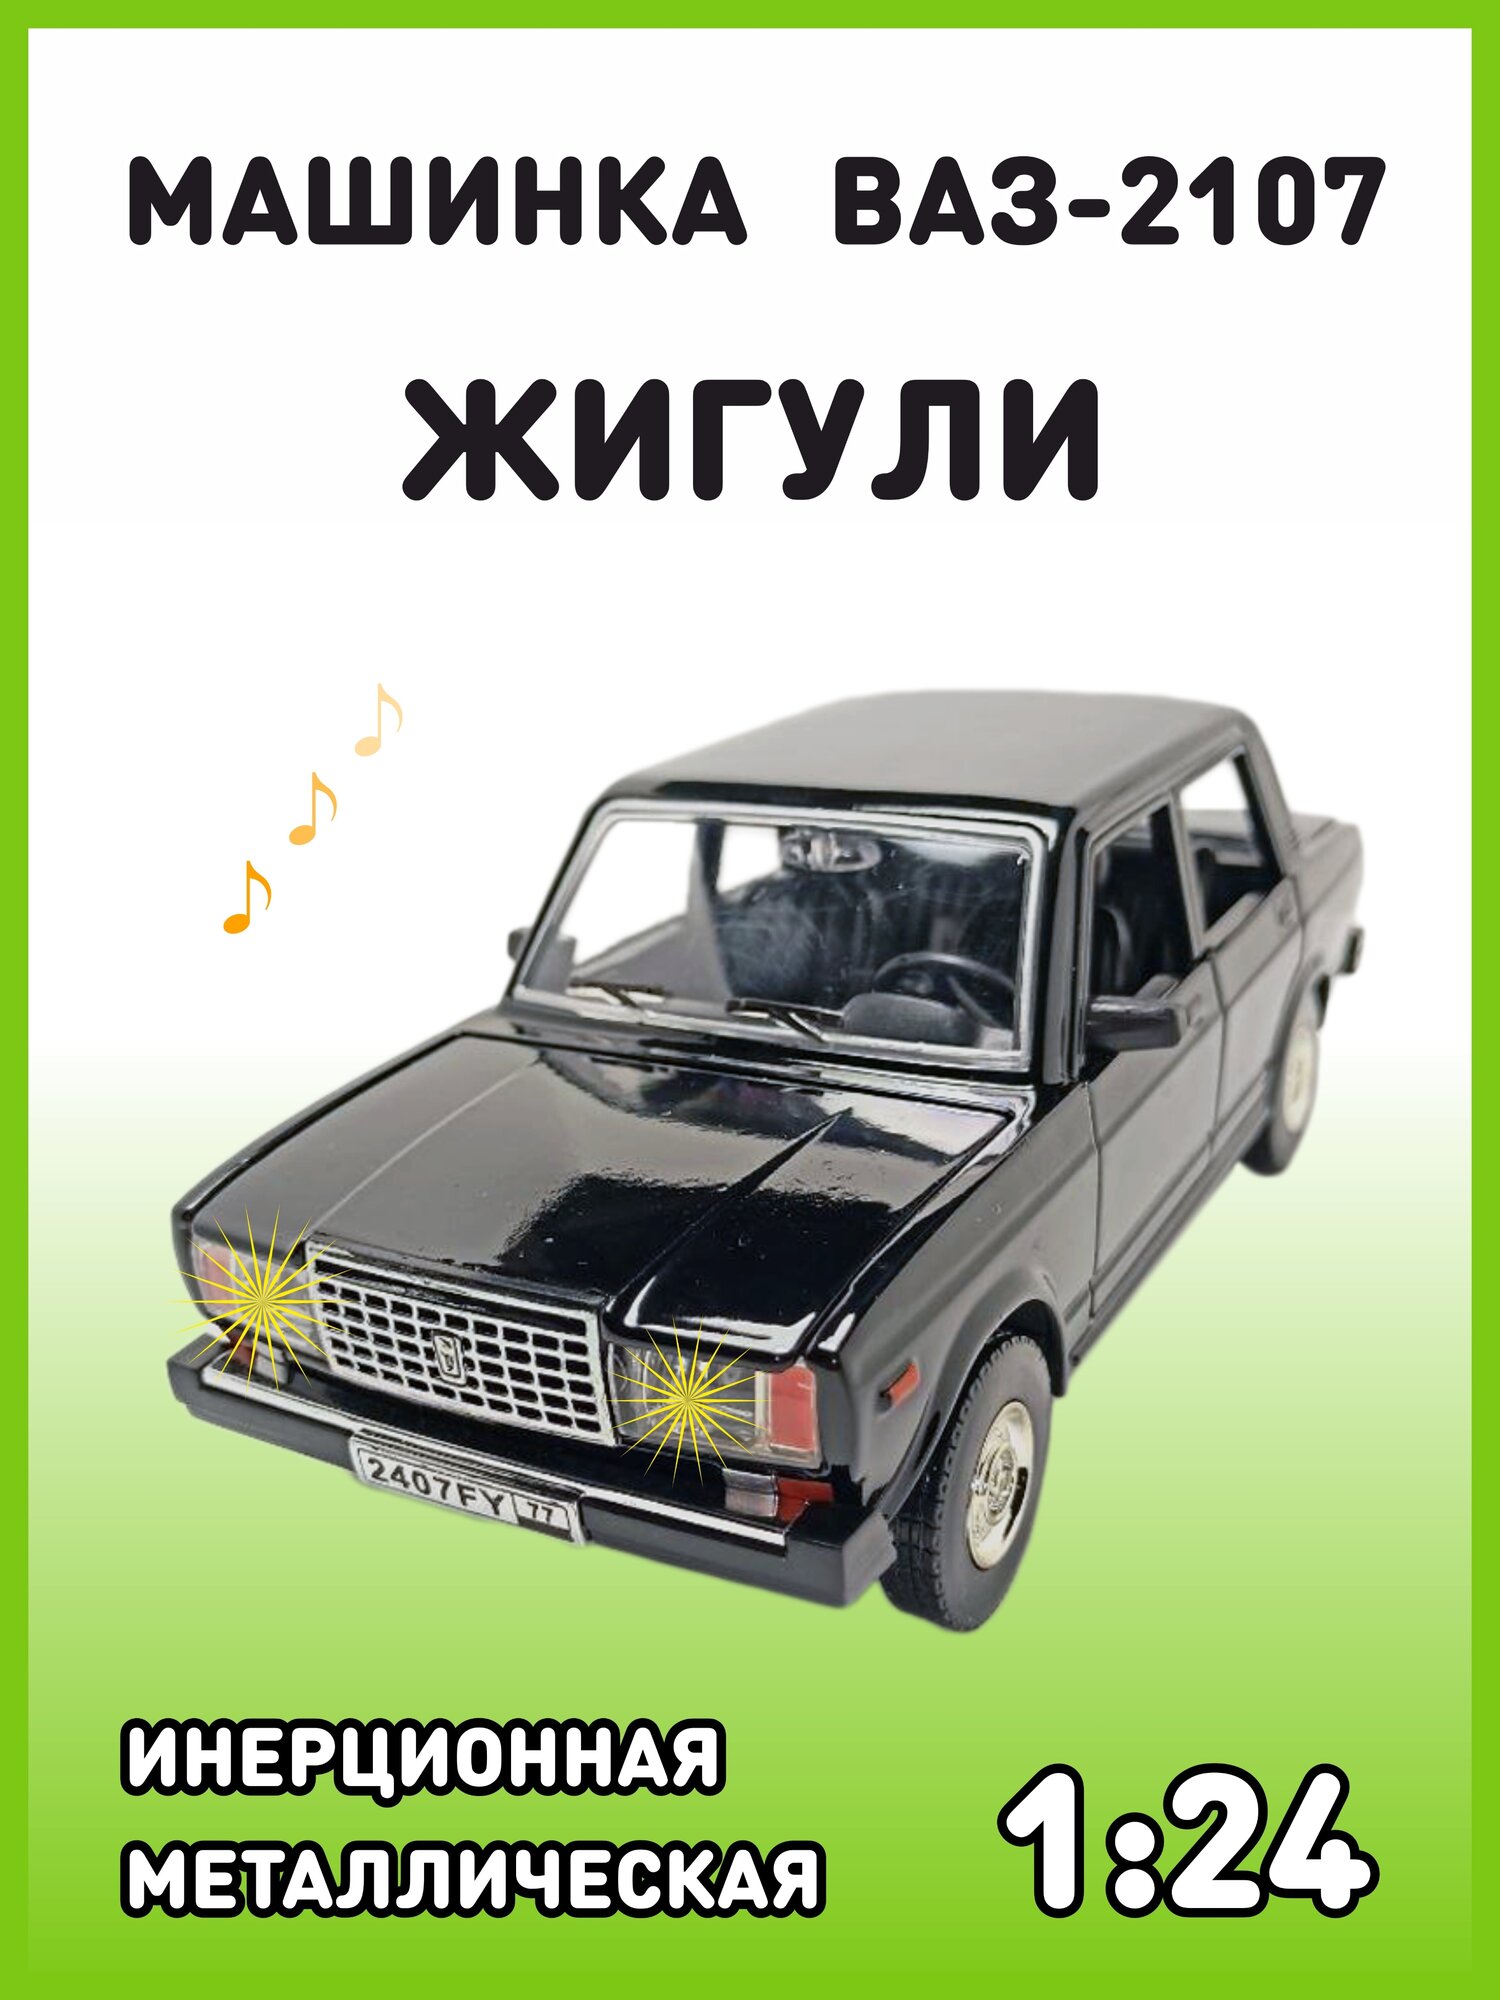 Модель автомобиля Жигули ВАЗ 2107 коллекционная металлическая игрушка масштаб 1:24 черный